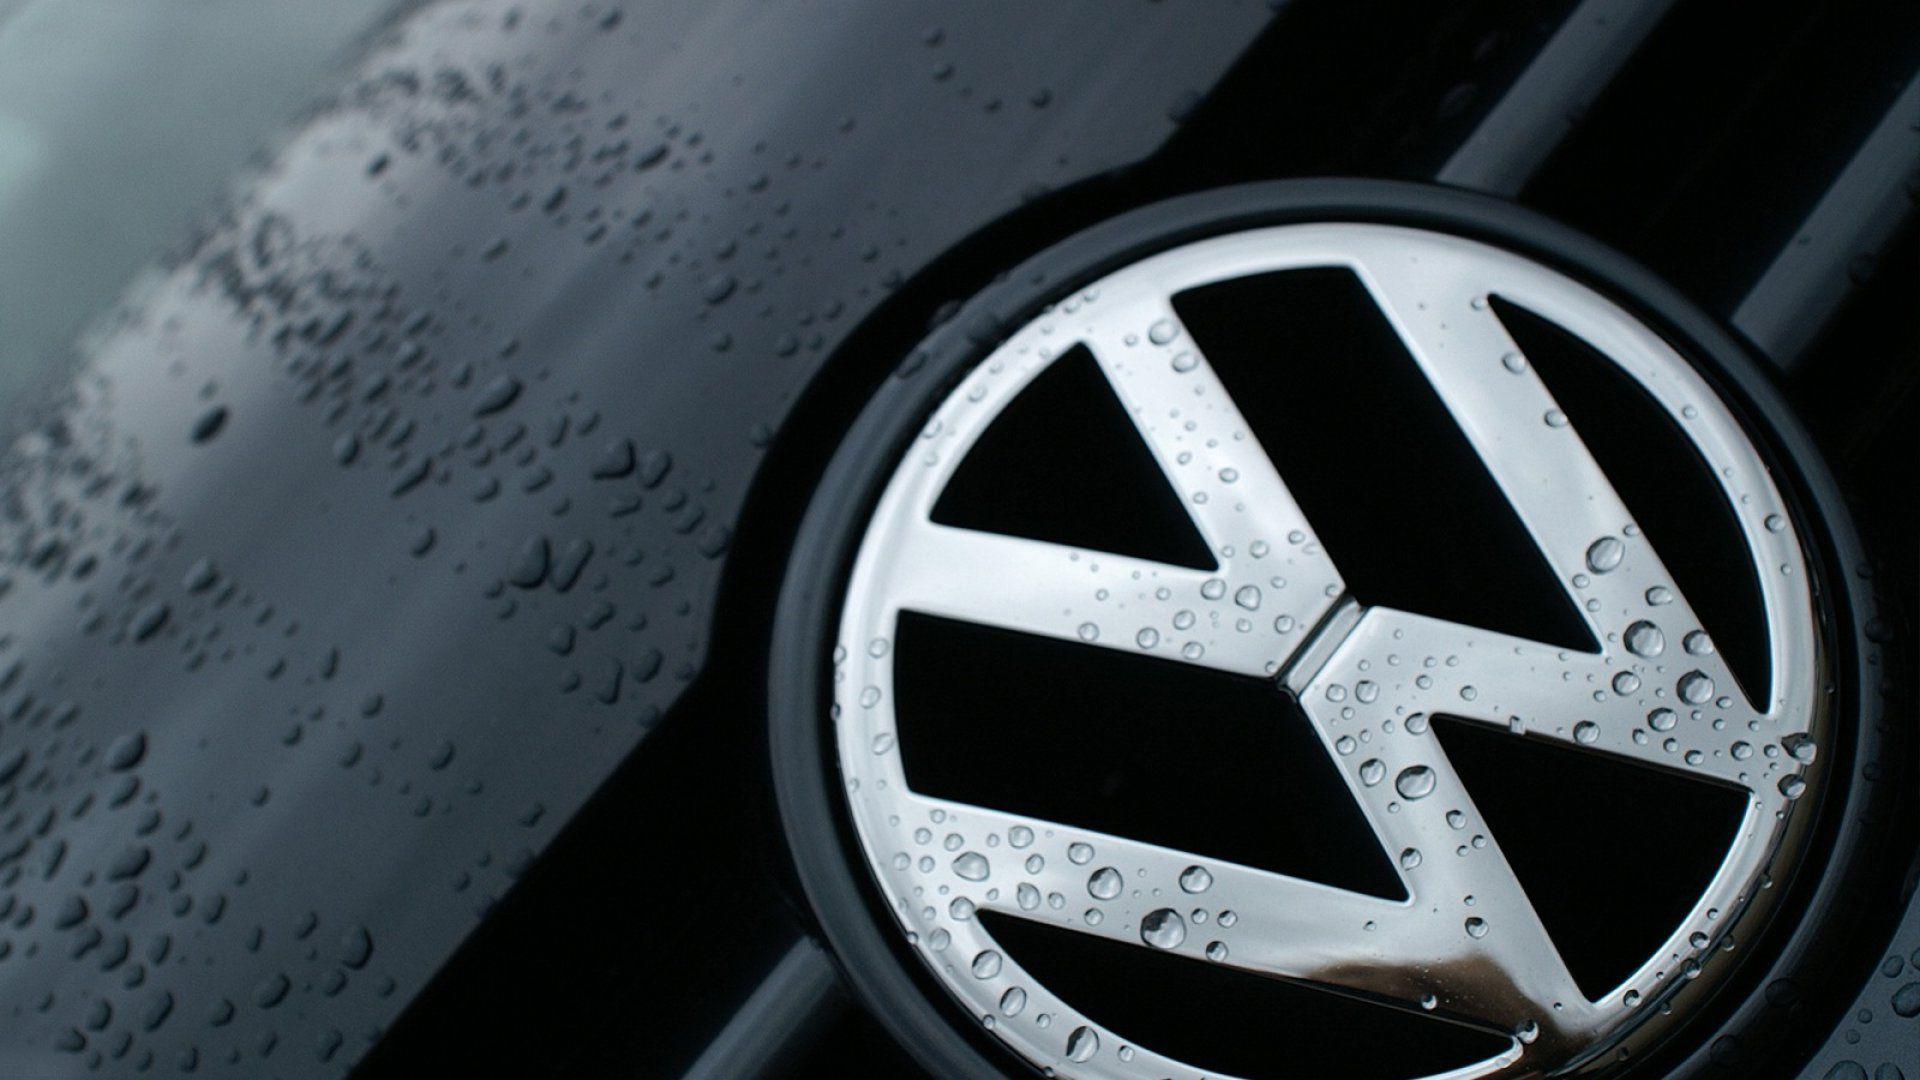 HD Volkswagen Logo Wallpaper